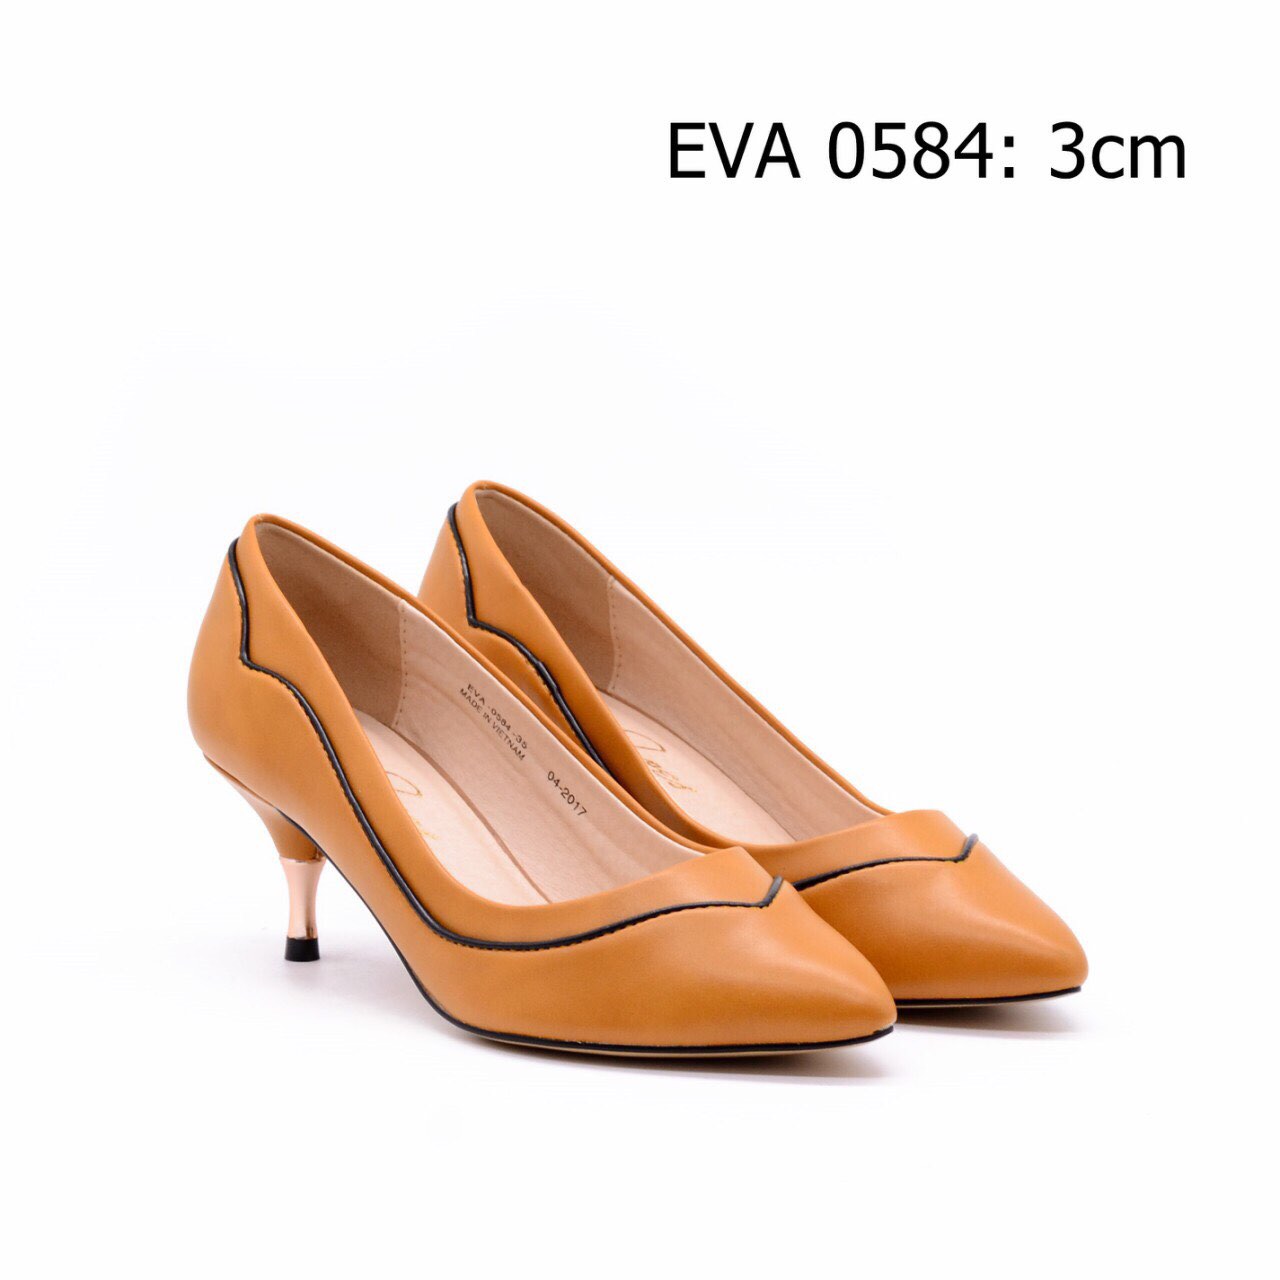 Giày công sở EVA0584 thiết kế viền nổi nữ tính cao 3cm.